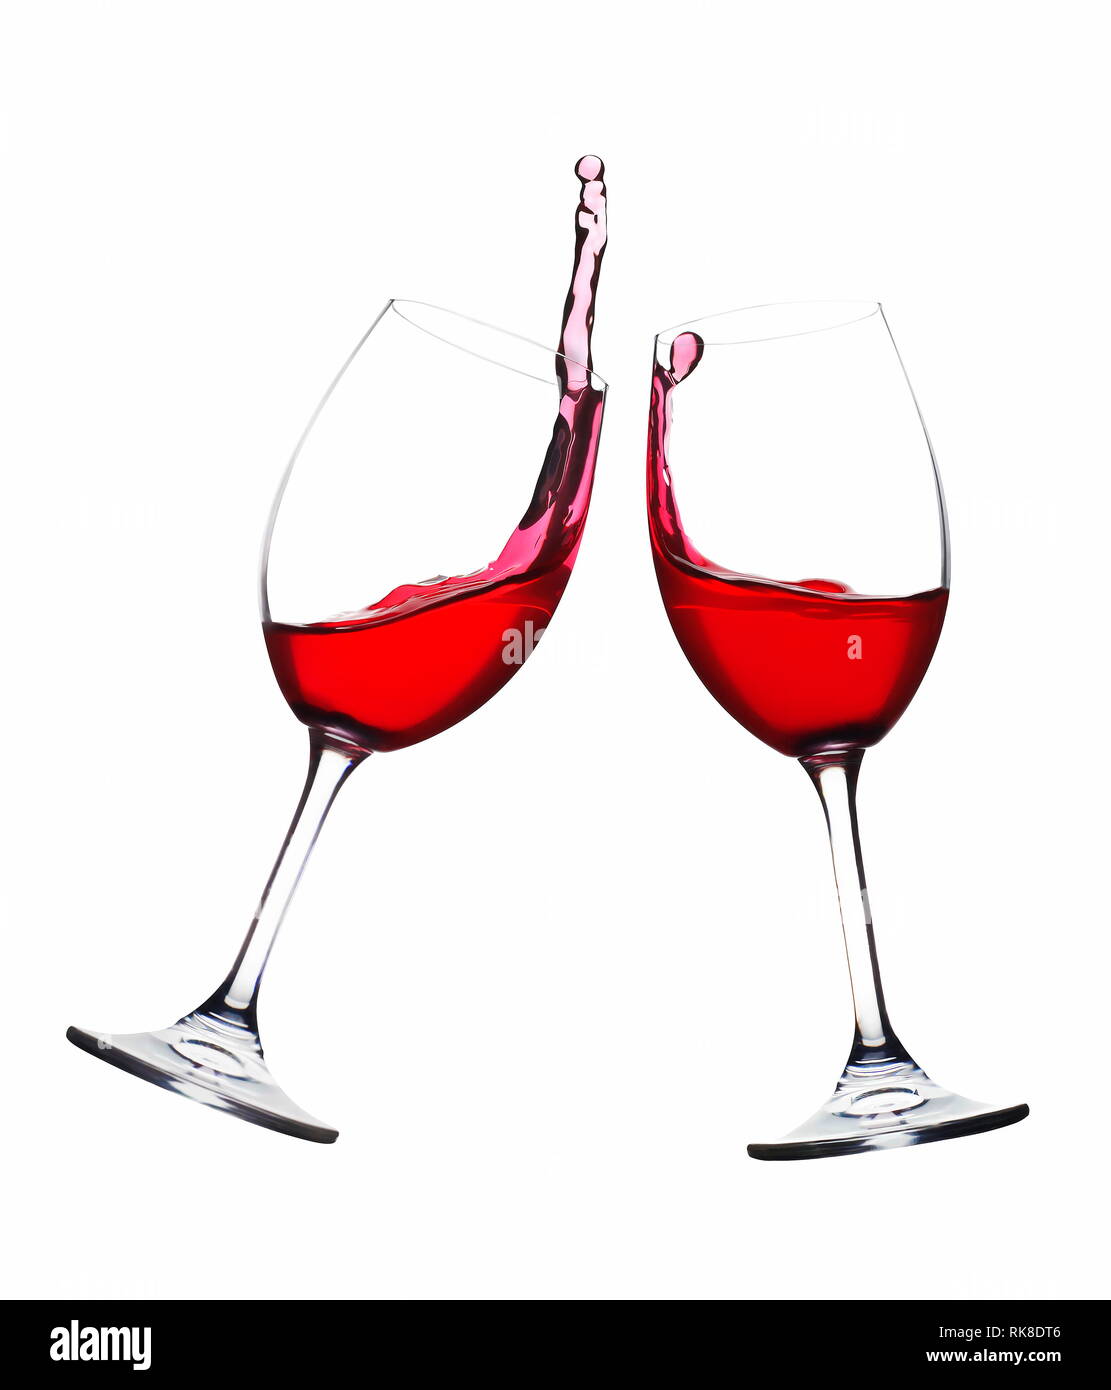 Cheers. Ein Toast mit Rotwein. Splash. Zwei Gläser zusammen Sie auf weißen Hintergrund. Spritzer Rotwein auf dem Ballon Gläser Stockfoto